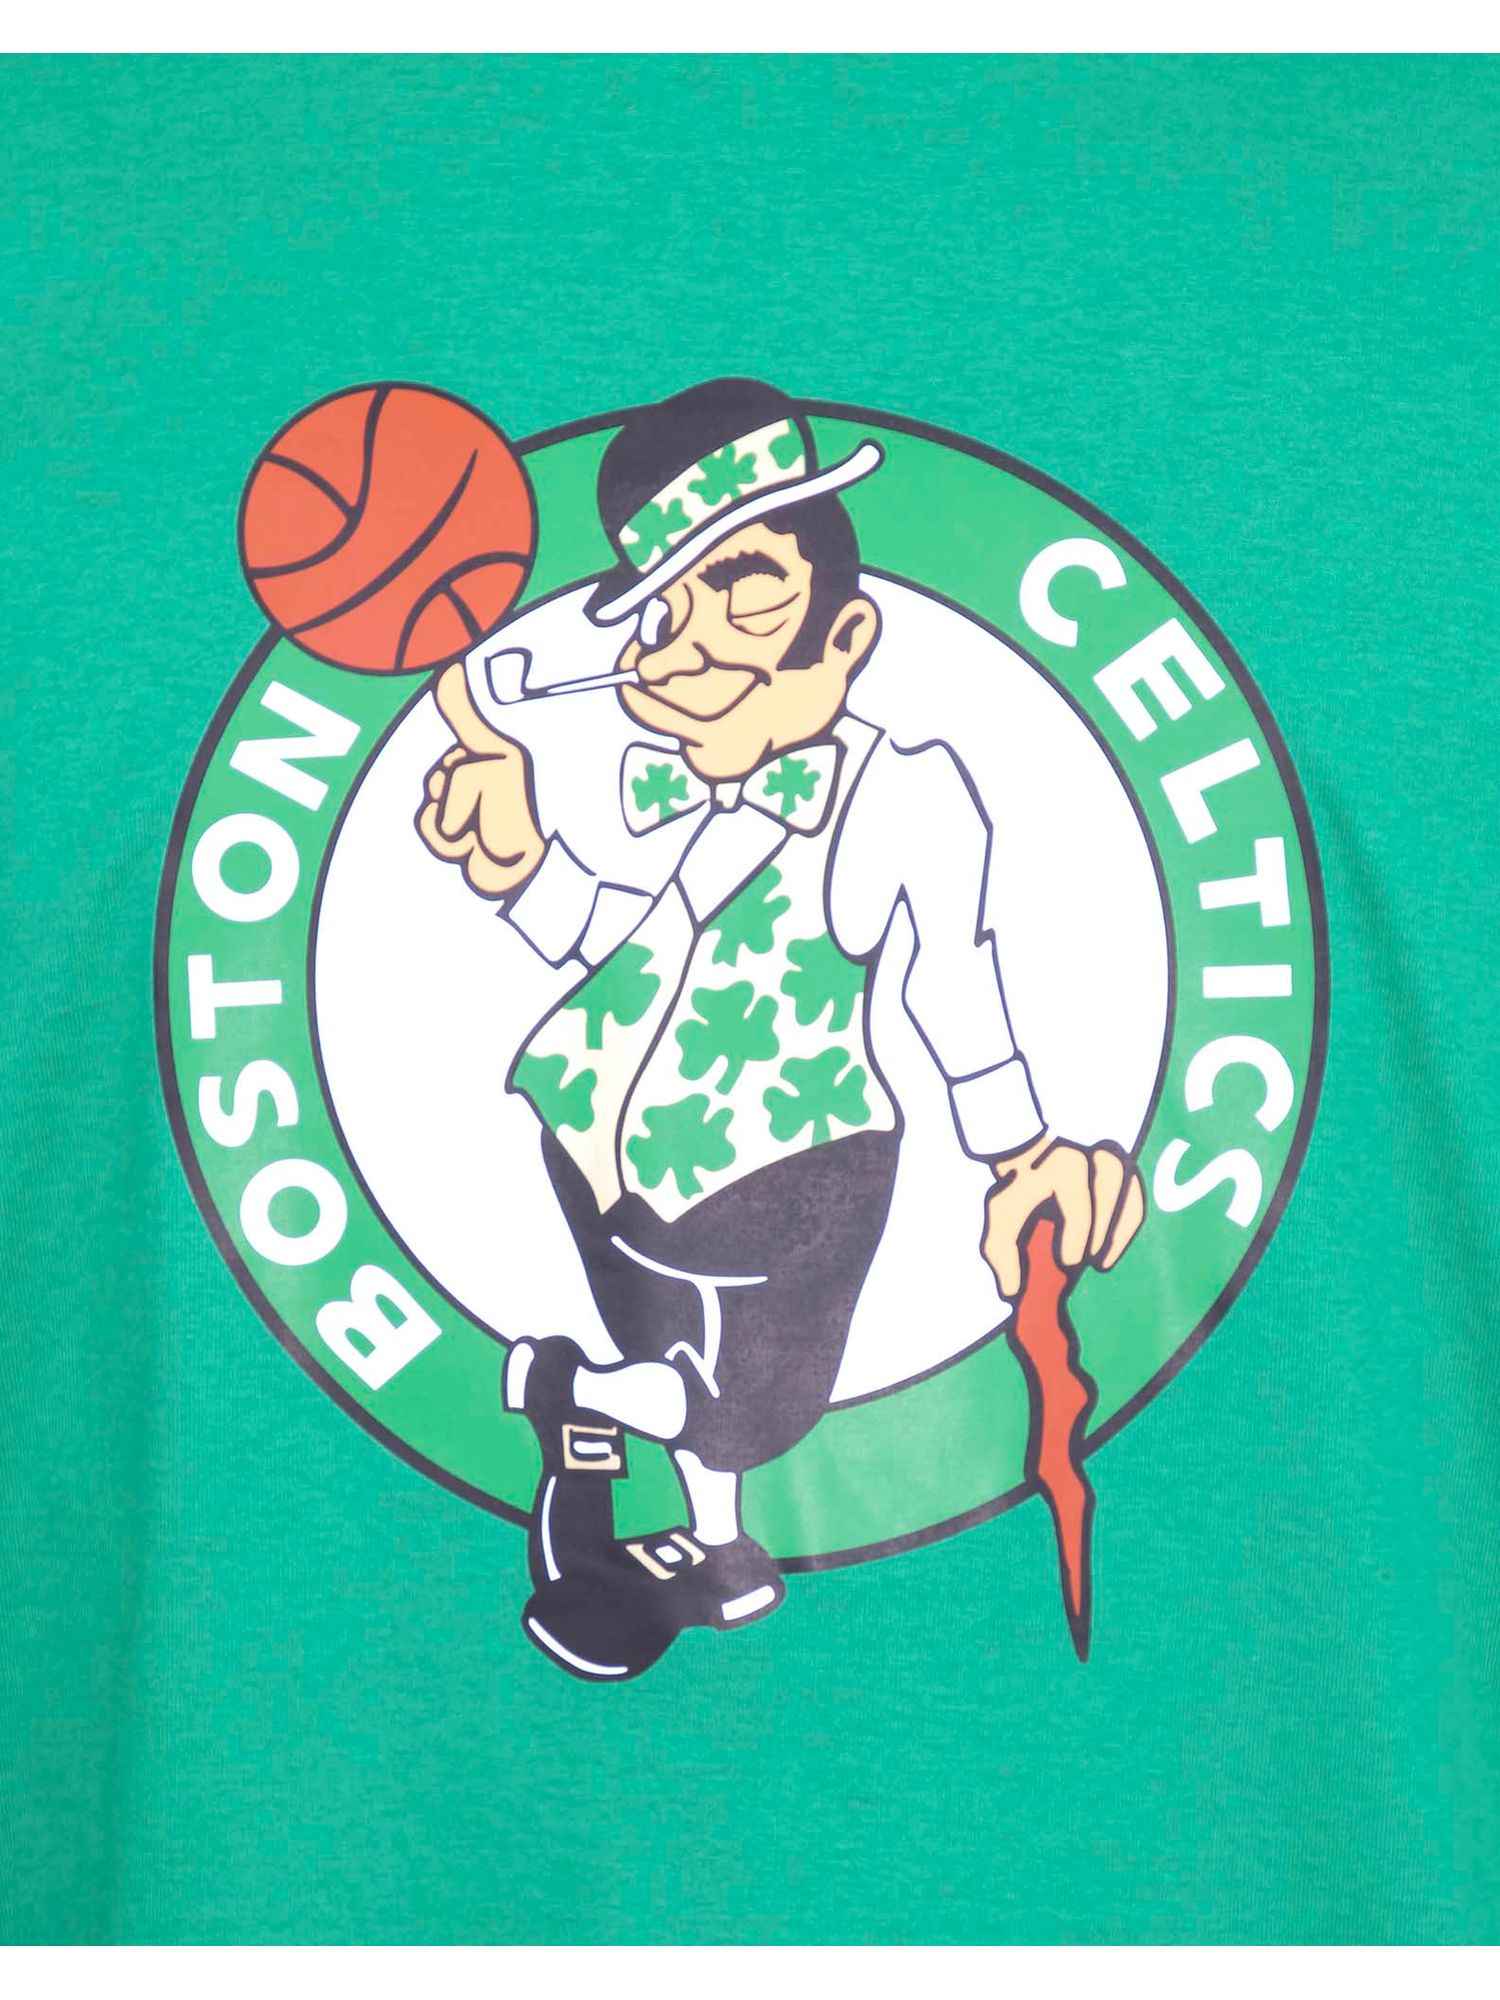 Tags - Nenhum resultado encontradoBoston Celtics